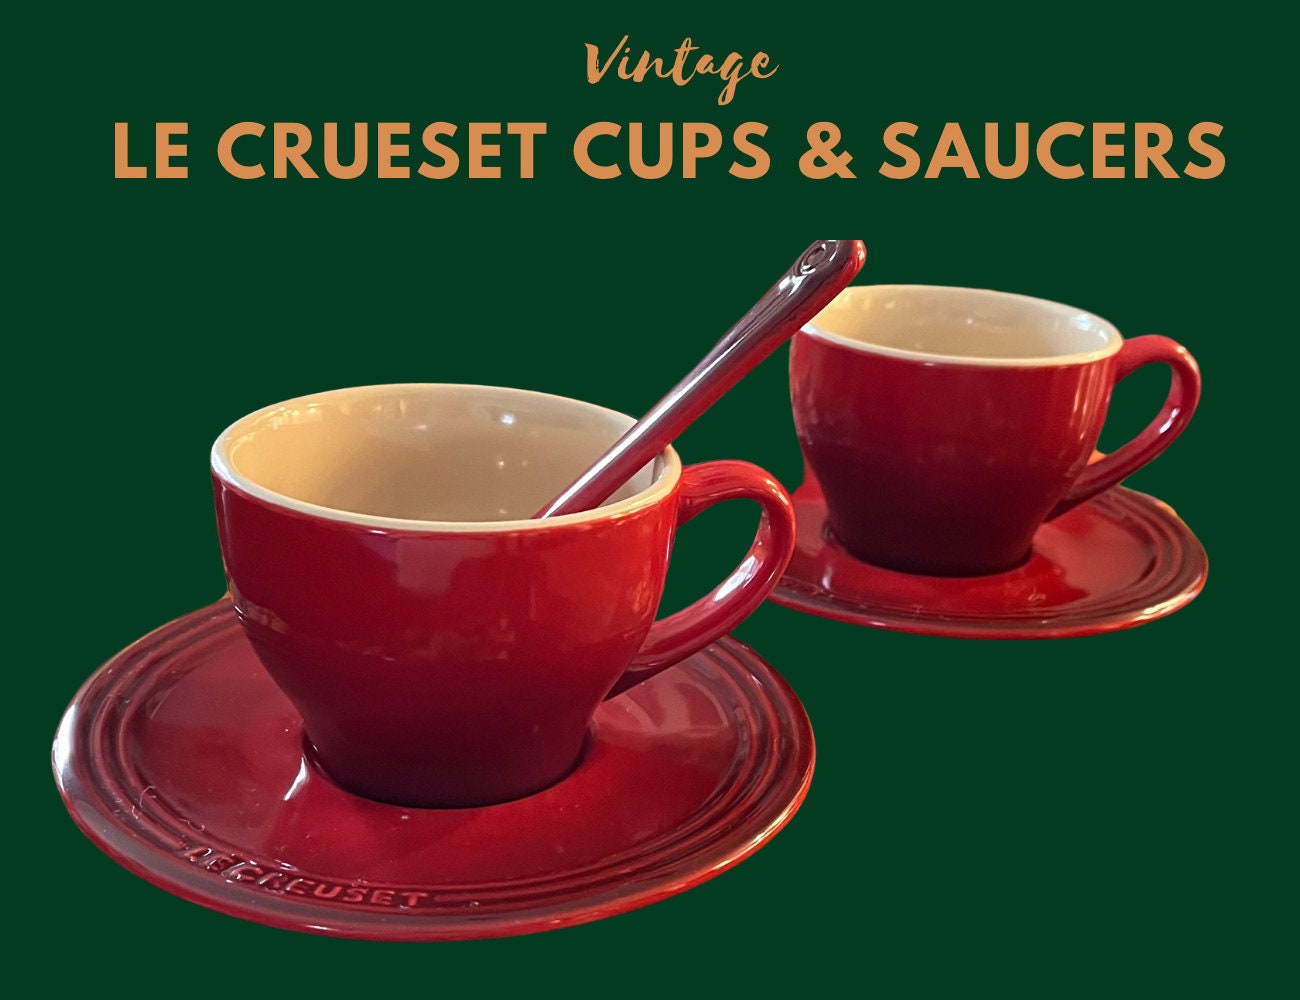 Le Creuset Stoneware Espresso Mug, 3 oz., Flame